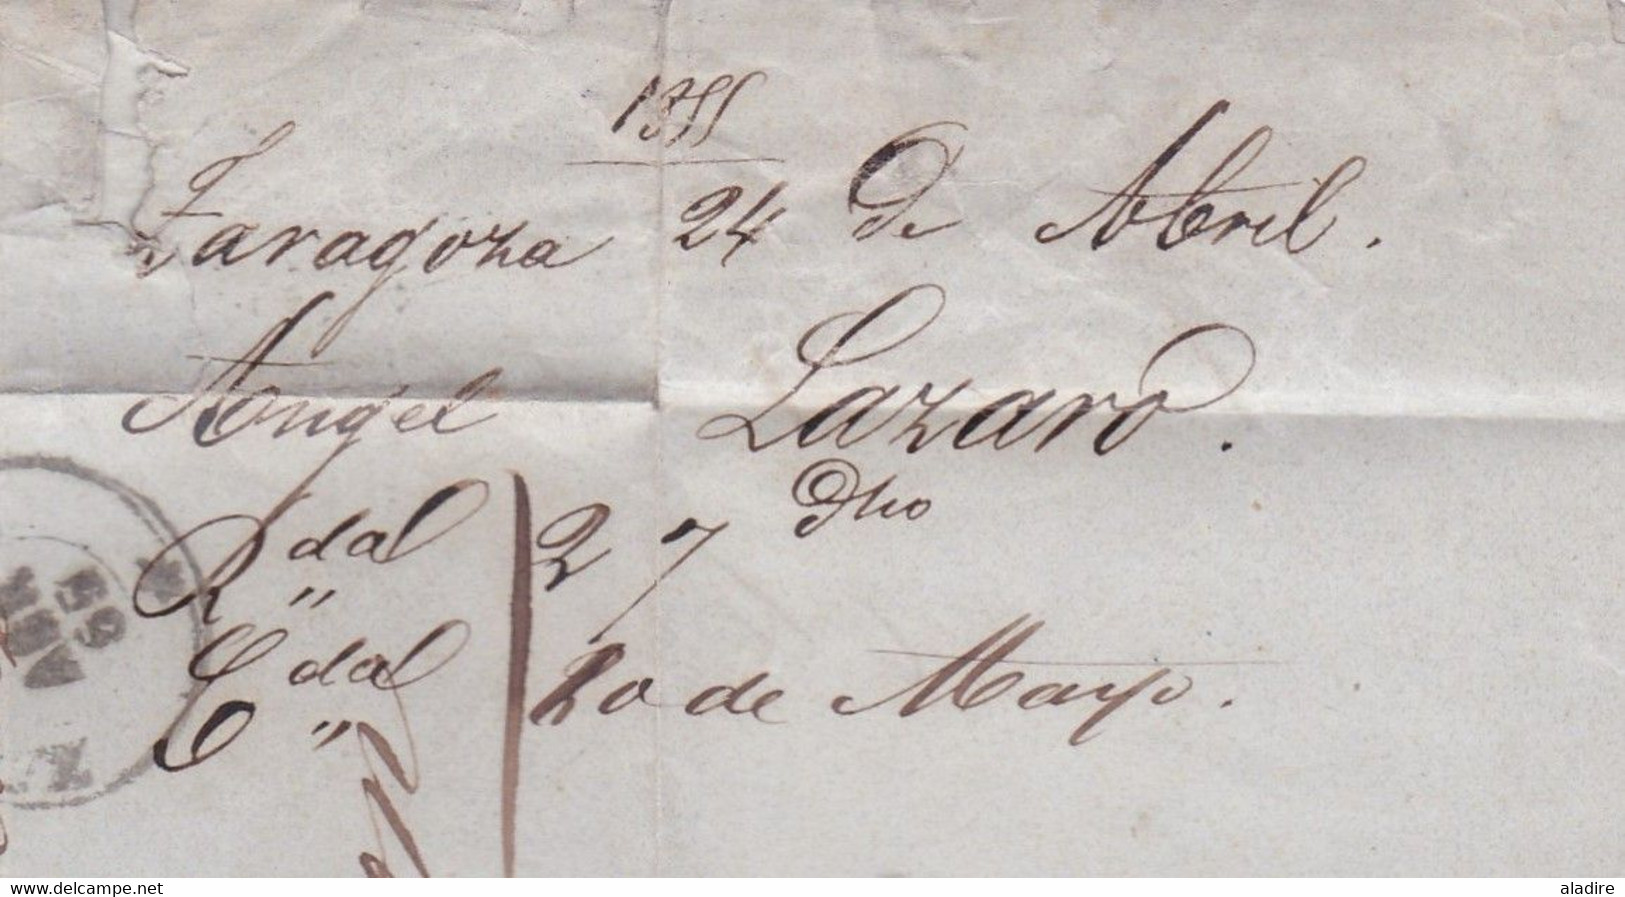 1855 - Lettre pliée avec corresp en espagnol de Zaragoza, Espagne vers Oloron, France - via Jaca - entrée par Oloron